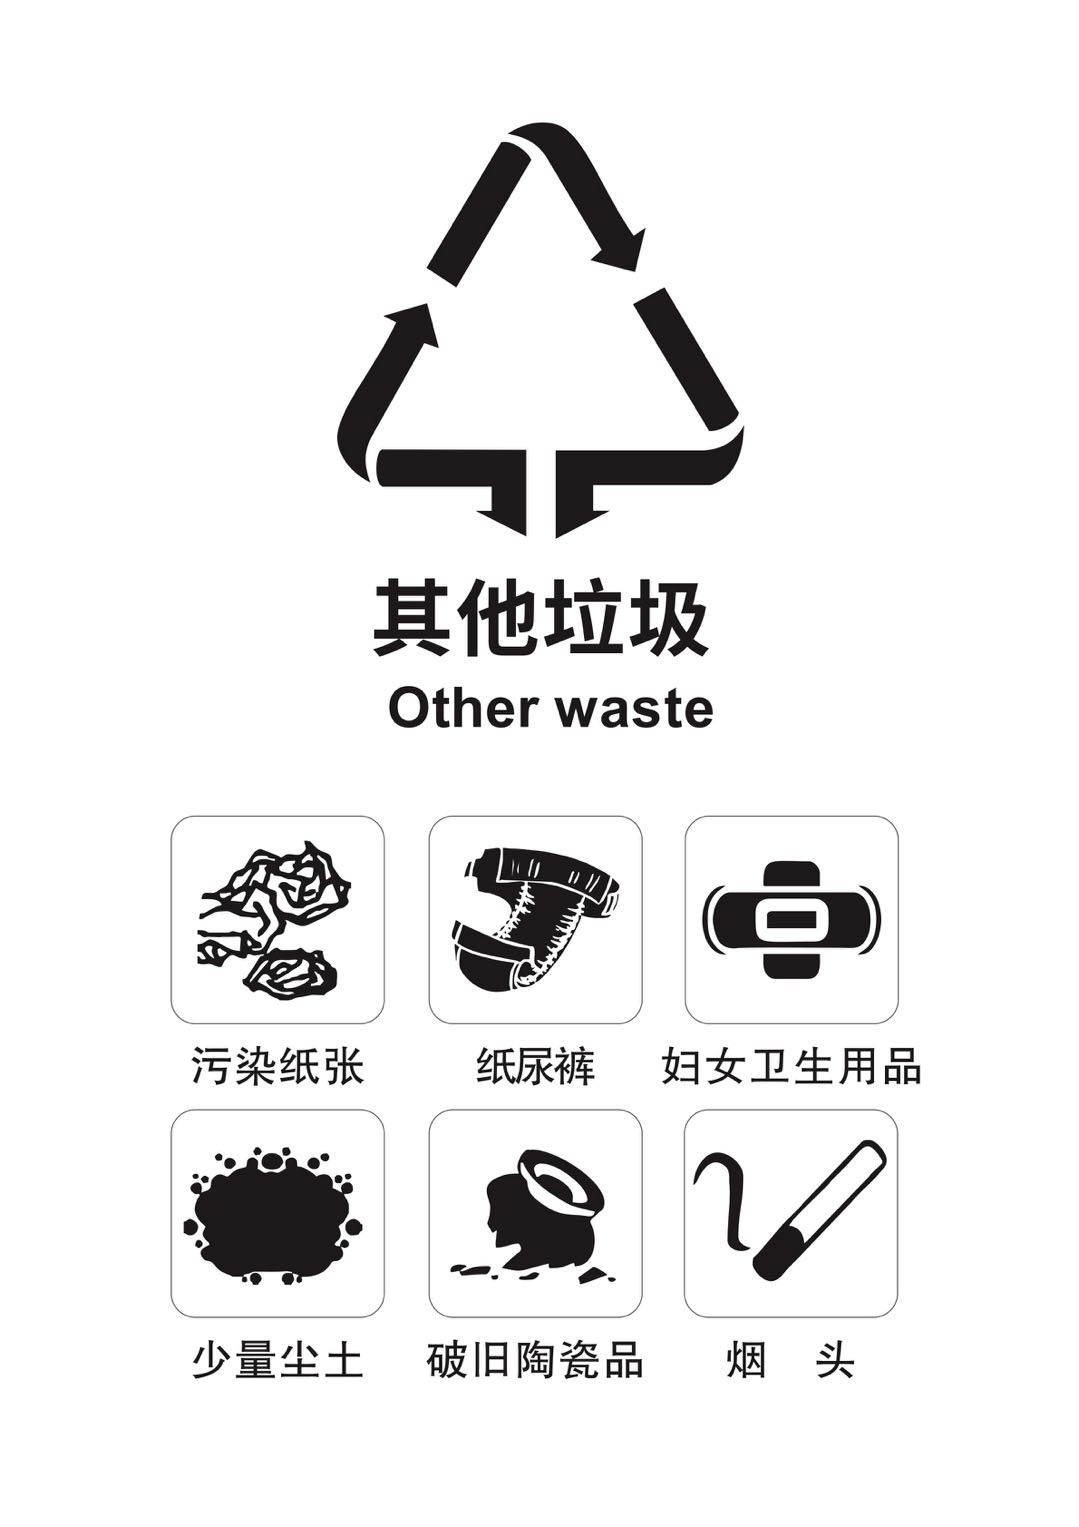 垃圾分类 人人有责从源头处做好垃圾分类不但能够有效减少环境污染